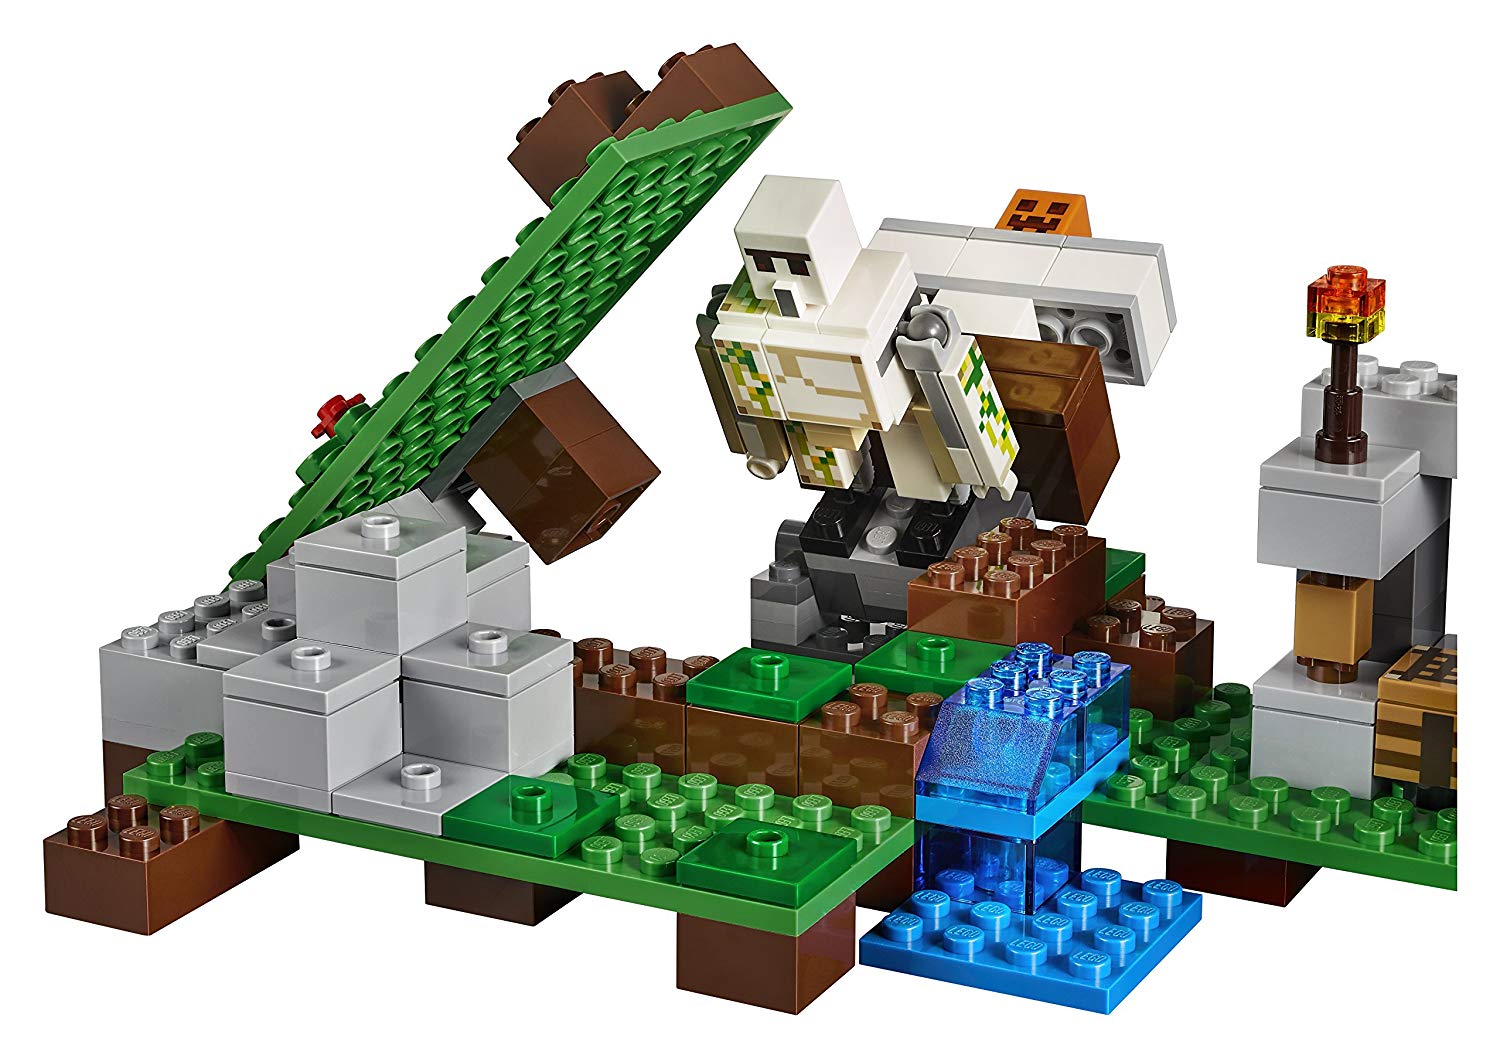 Lego Minecraft 21123 – Hộ Vệ Sắt Golem